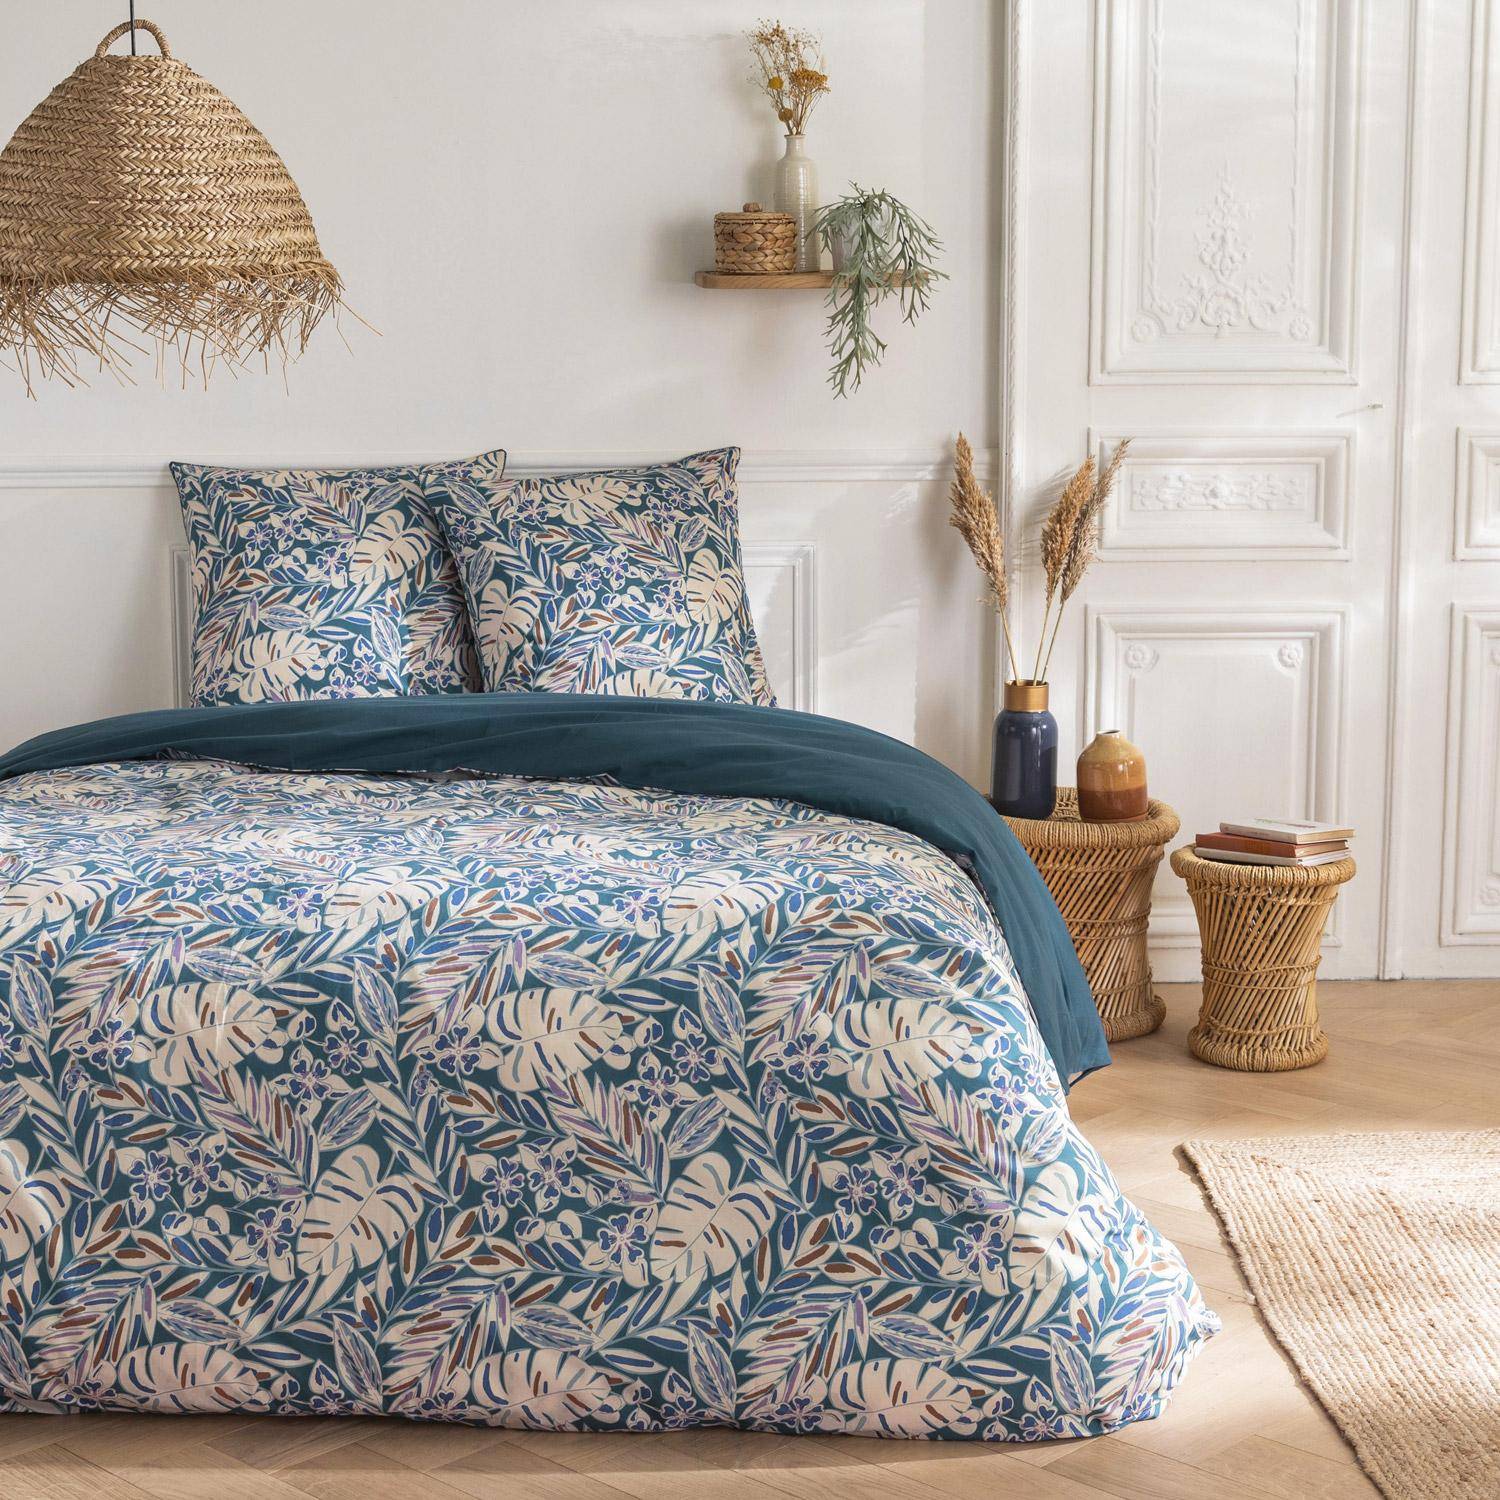 Parure de lit réversible 260x240cm imprimé feuillage bleu et blanc en coton ,sweeek,Photo1